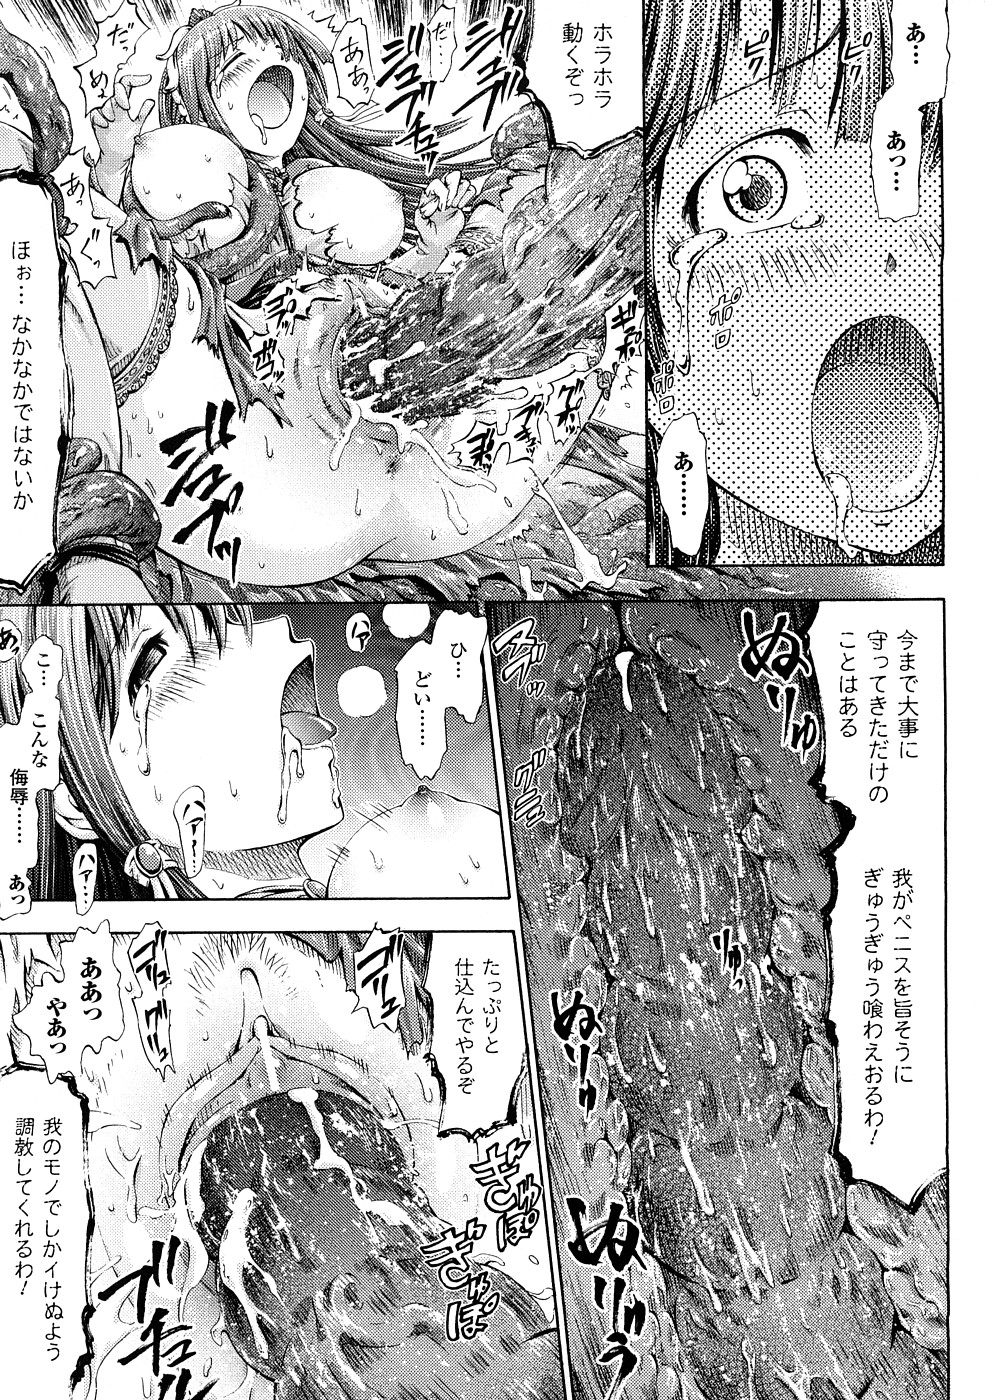 [Horitomo] Fairy Tales page 14 full